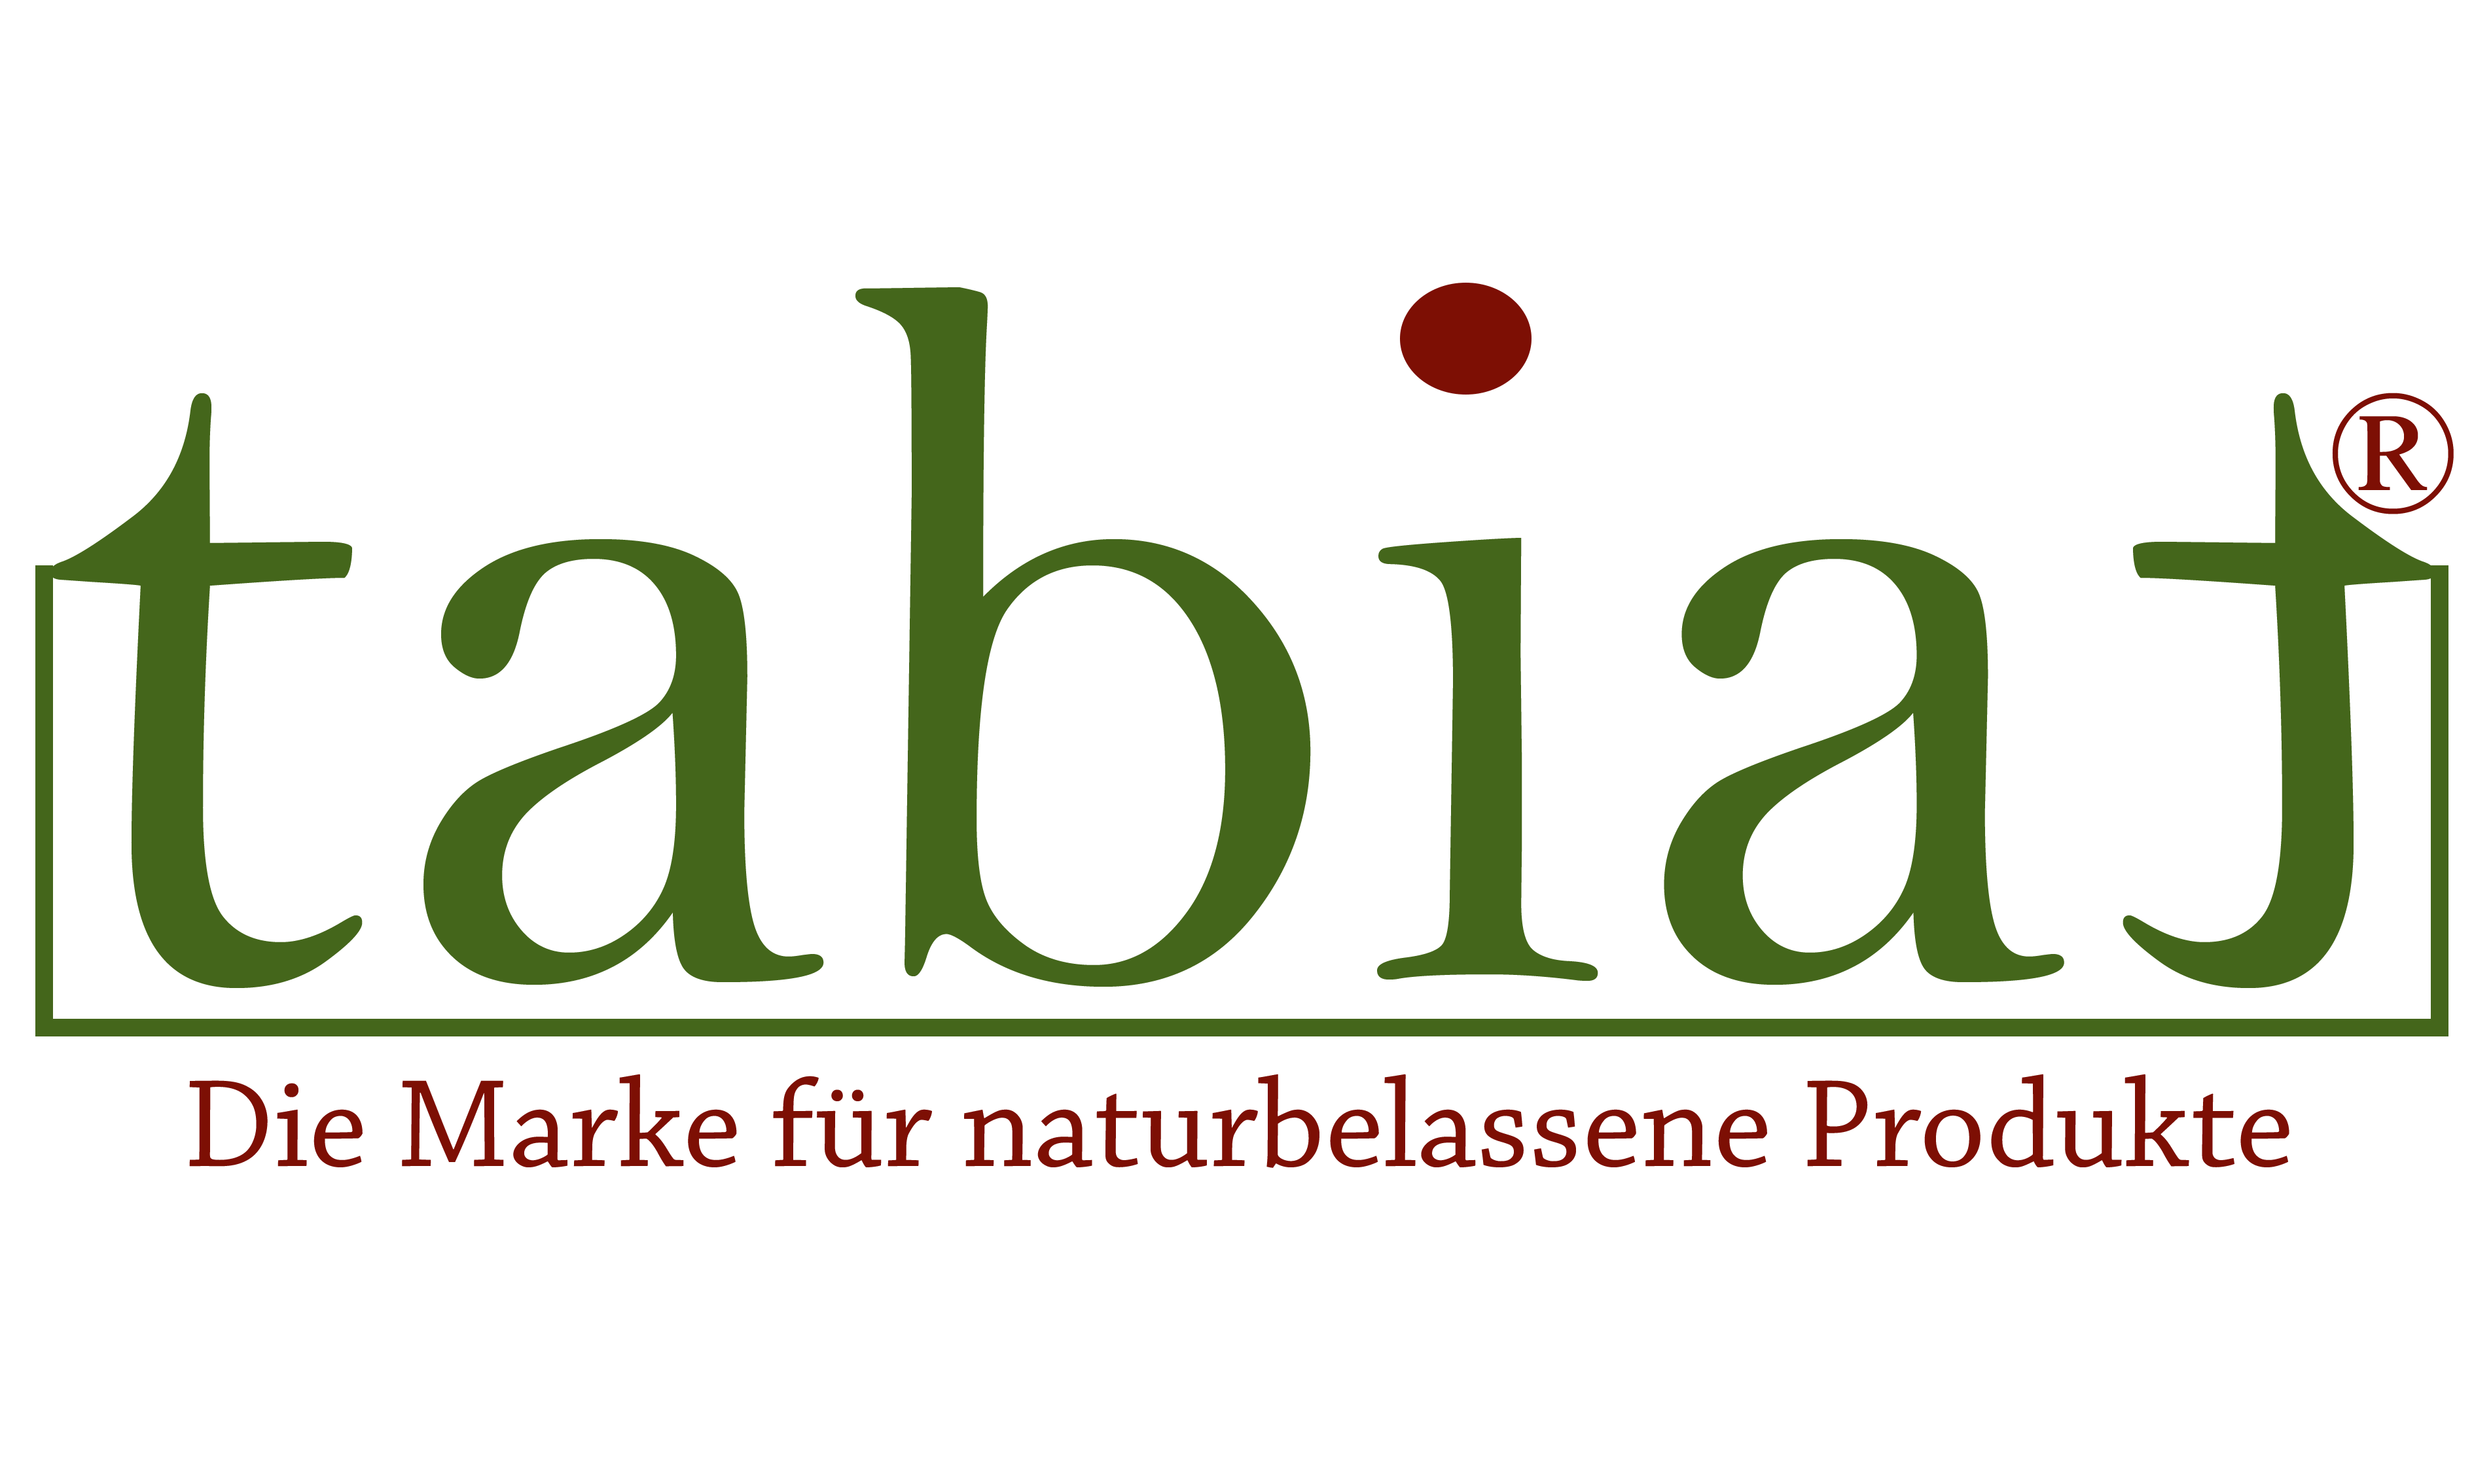 tabiat - Die Marke für naturbelassene Produkte